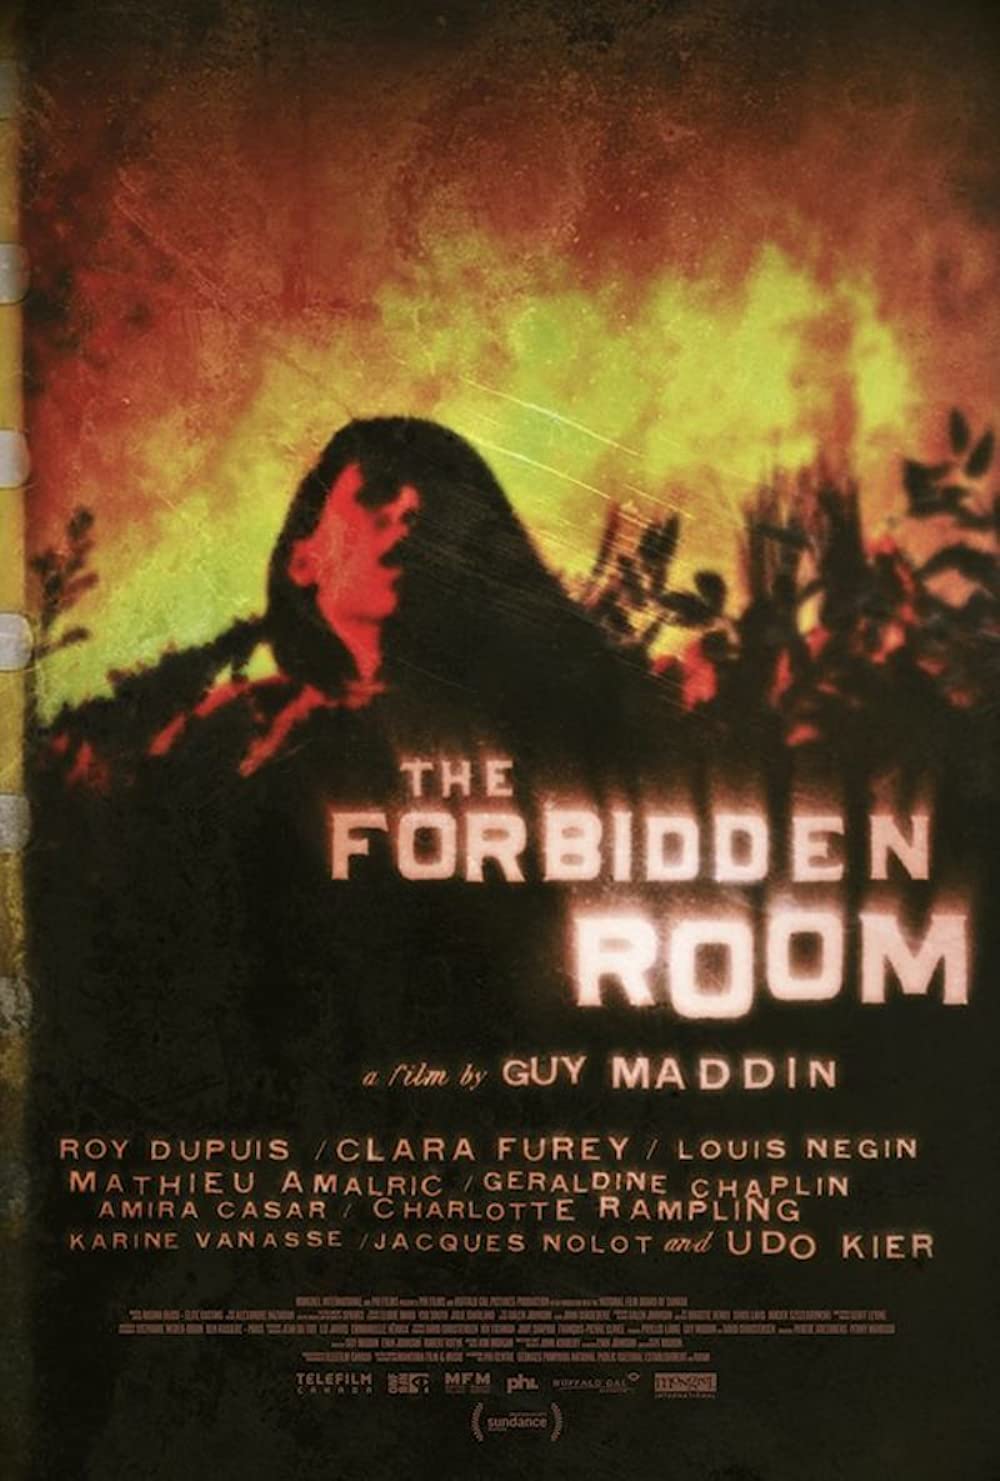 Filmbeschreibung zu The Forbidden Room